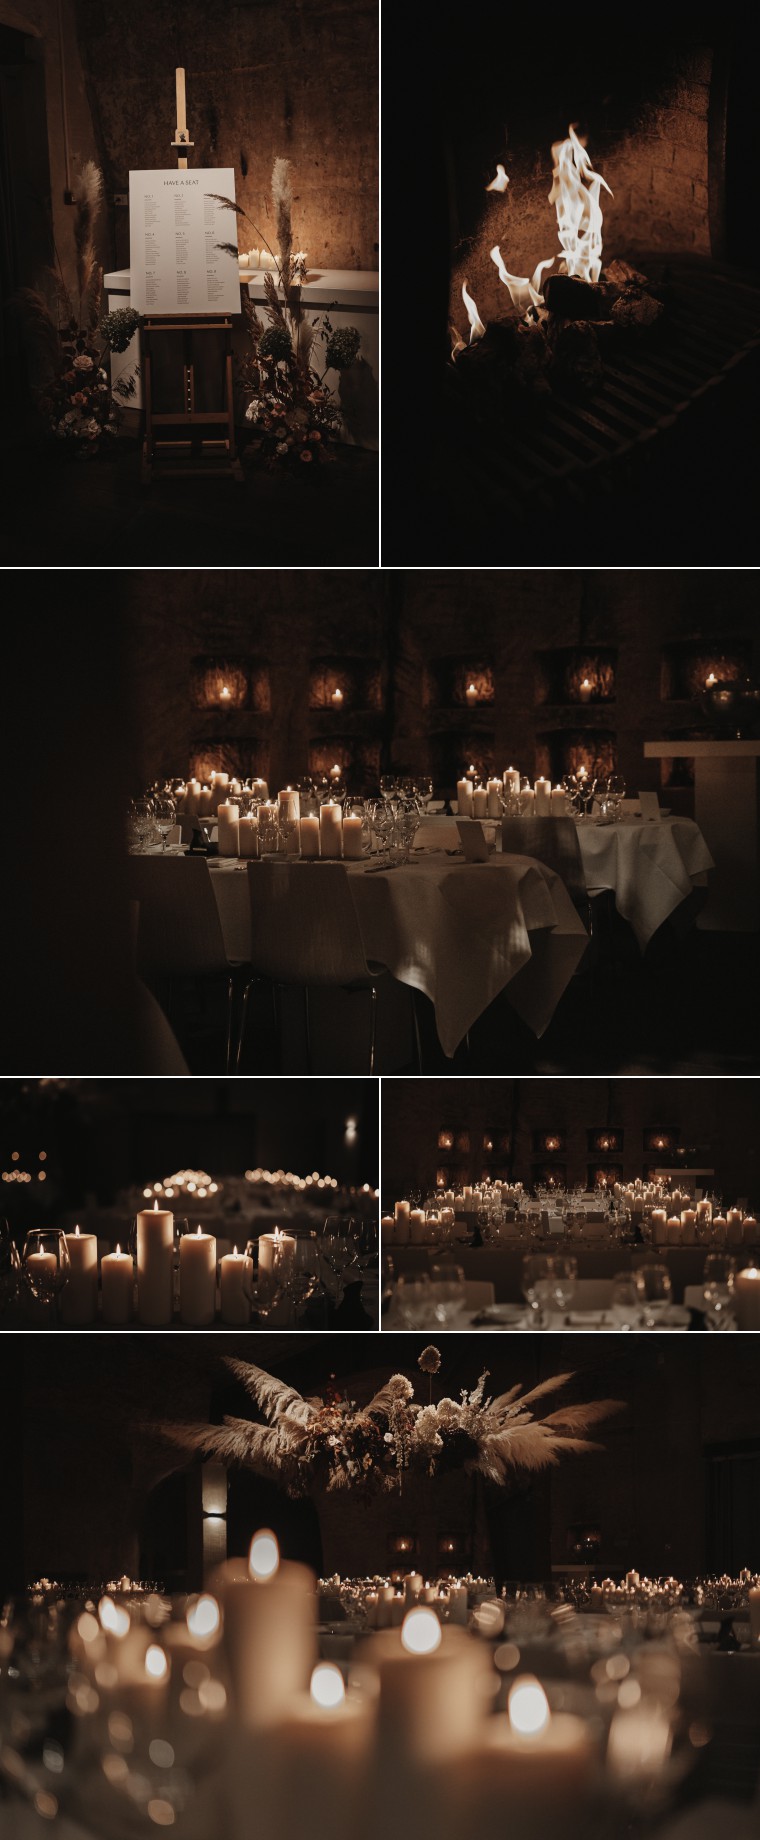 intiem bruiloft diner met kaarsen